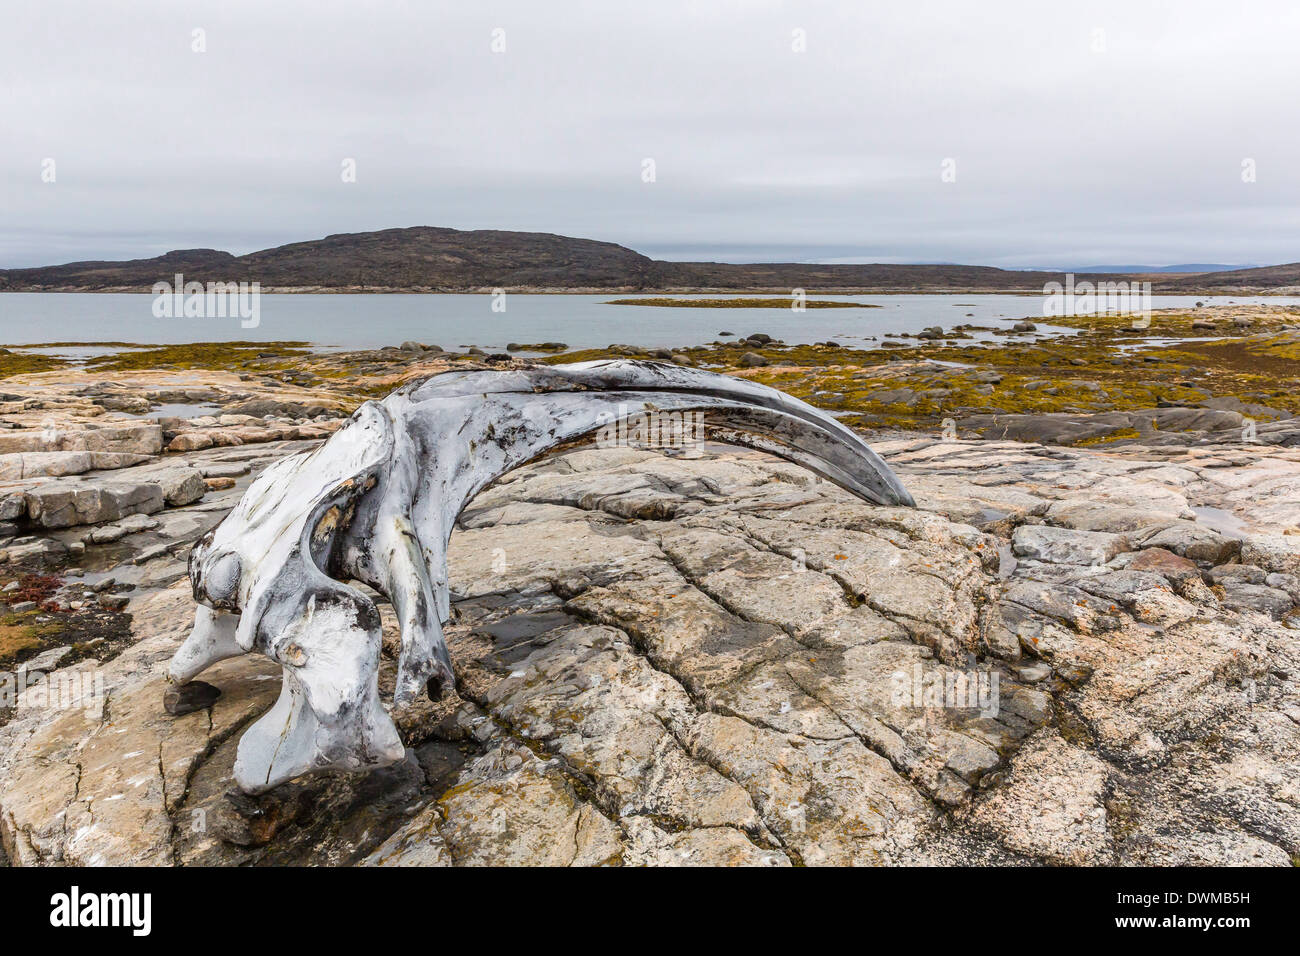 Crâne de la baleine boréale (Balaena mysticetus) à l'Île Kekerten abandonnés station baleinière, Nunavut, Canada, Amérique du Nord Banque D'Images